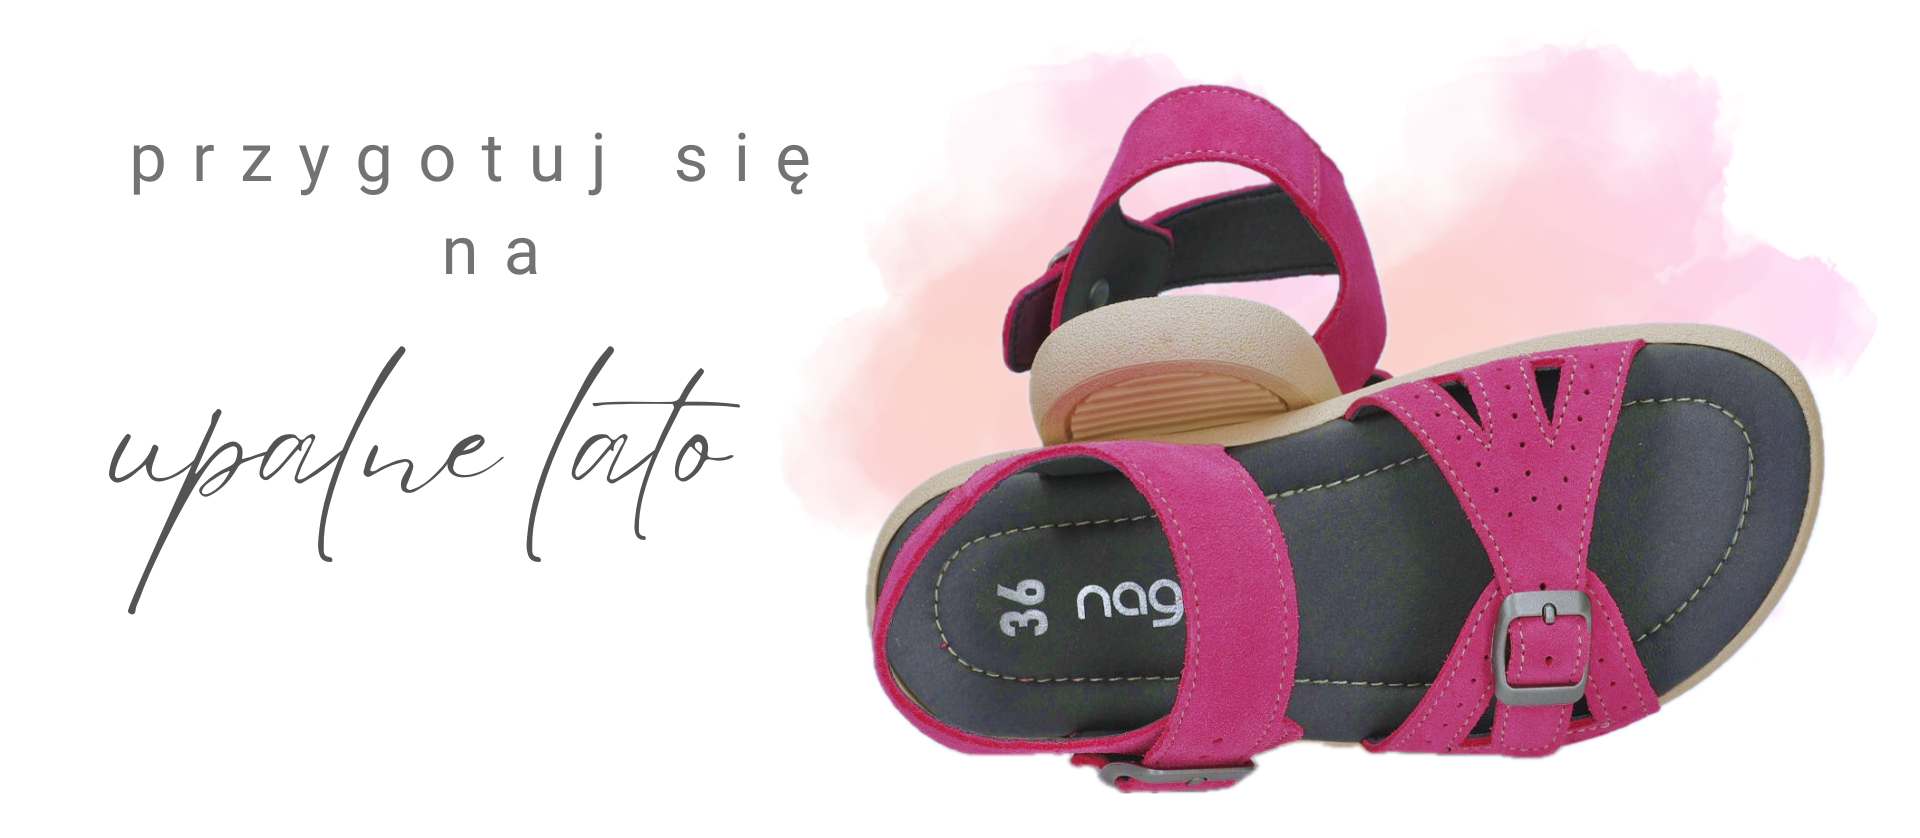 Nagaba - polski producent obuwia